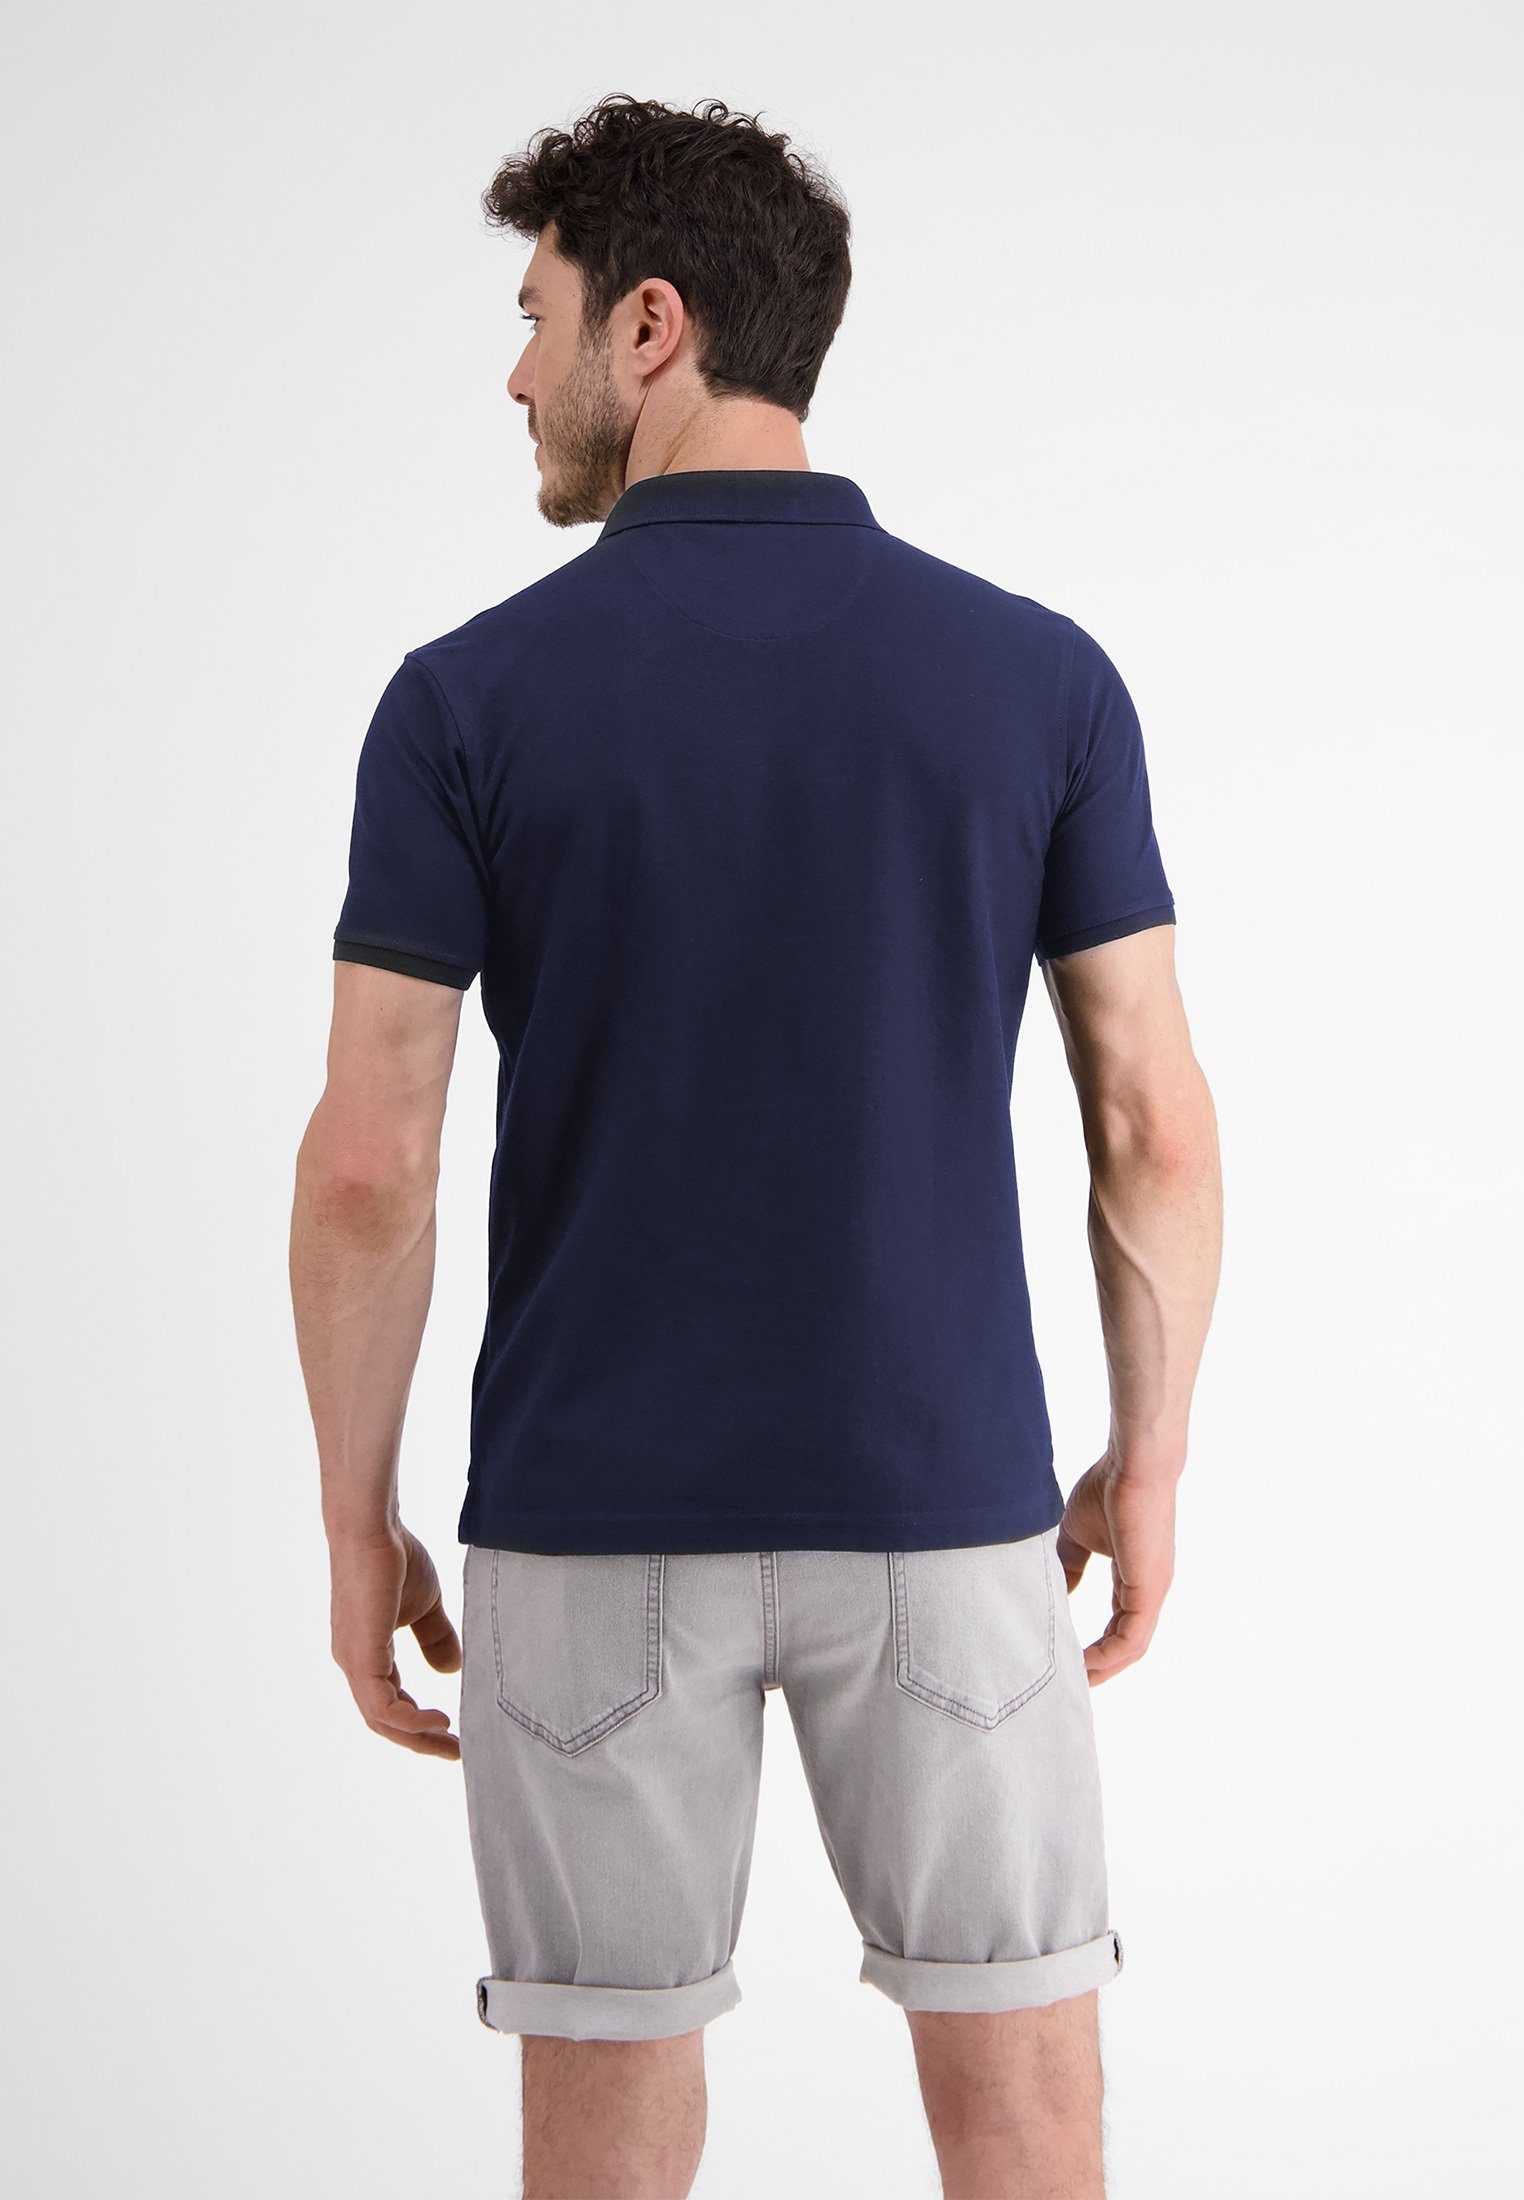 NAVY Dry* LERROS Polostyle Piquéqualität Poloshirt in LERROS *Cool & Klassischer